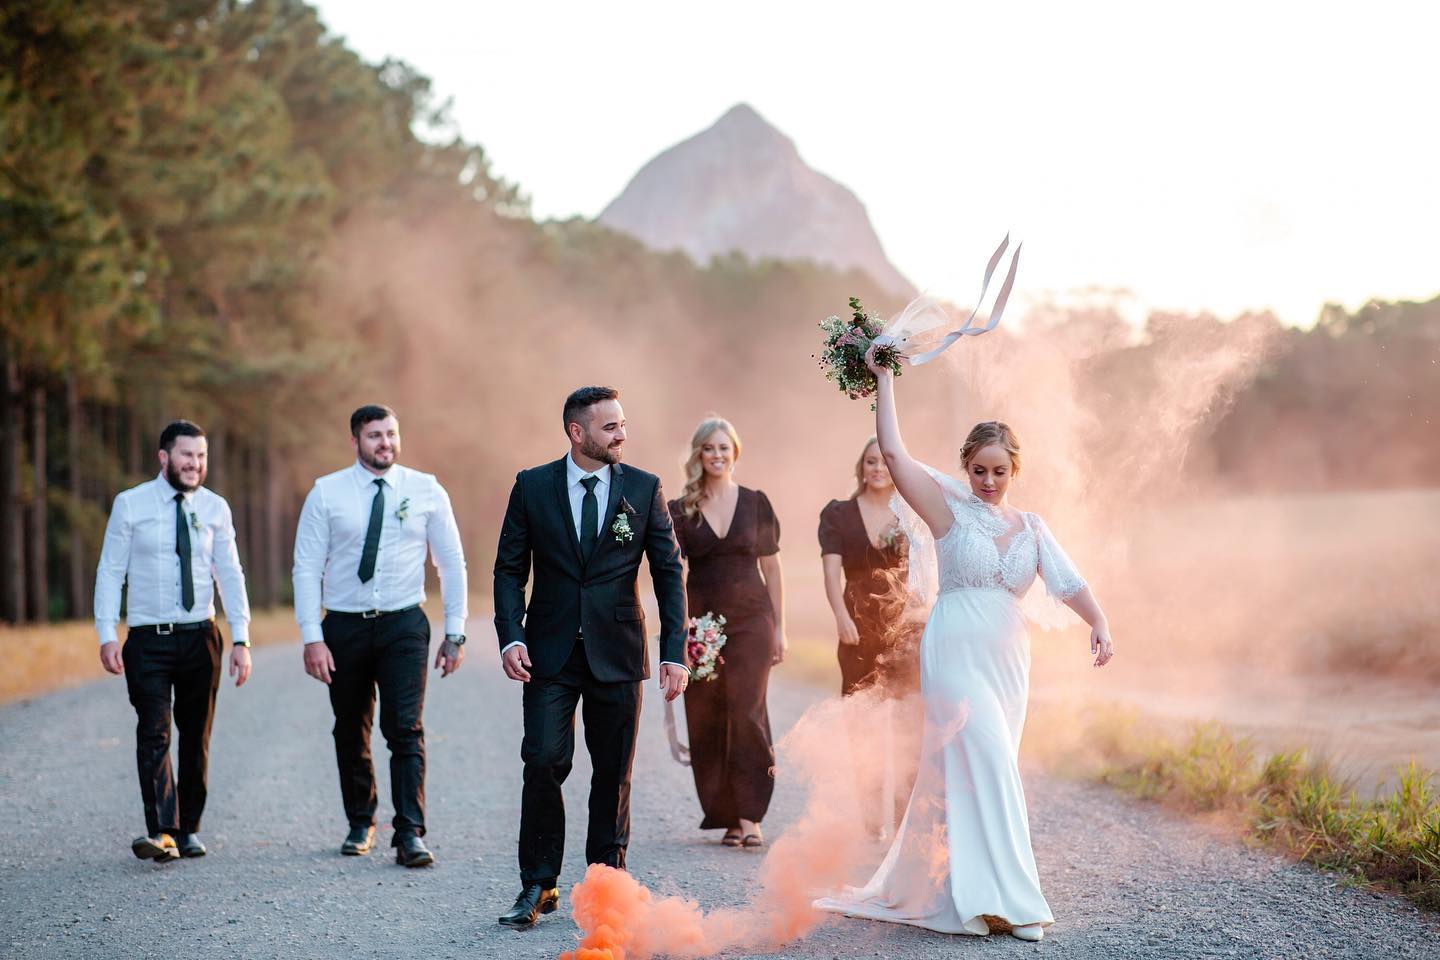 SUNSHINE COAST WEDDING SHOWCASE – LISA PEARL PHOTOGRAPHY